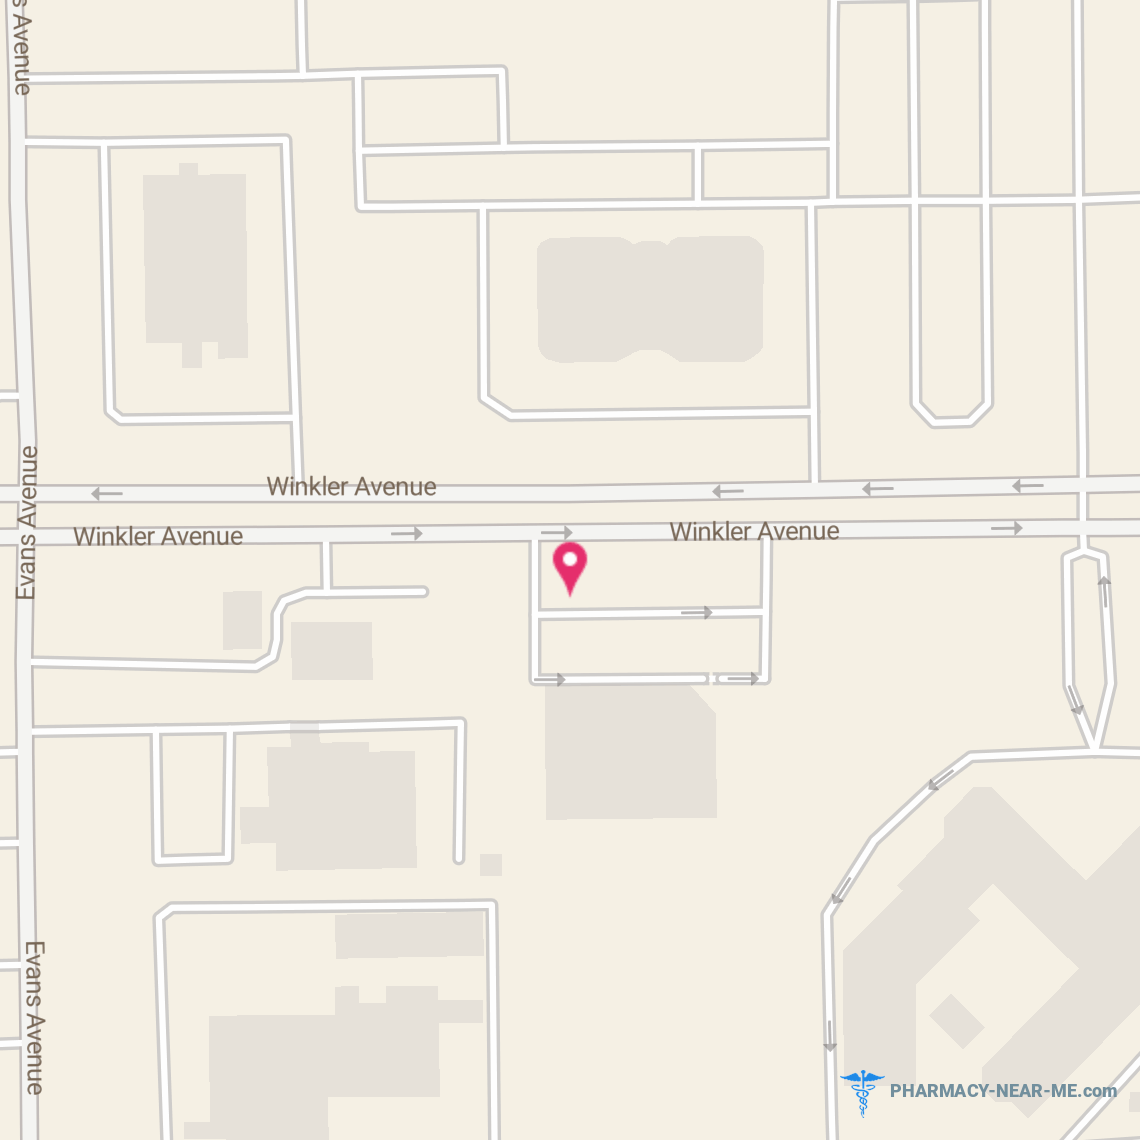 HARRINGTON'S PHARMACY - Pharmacy Hours, Phone, Reviews & Information: 2600 Winkler Ave, Fort Myers, FL 33901